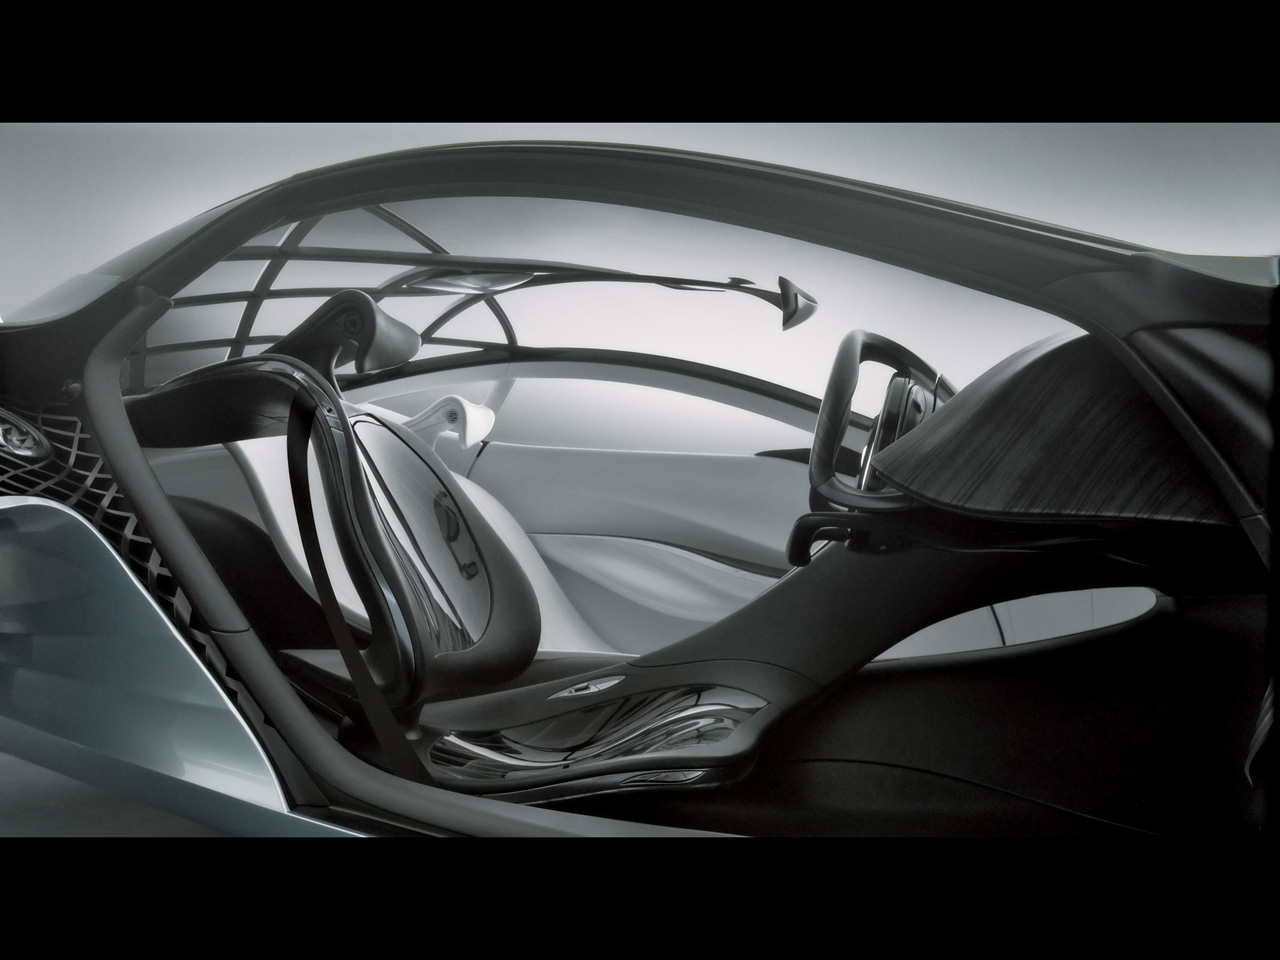 2007 Mazda Taiki Concept - Seating 2 - 1280x960 - Wallpaper